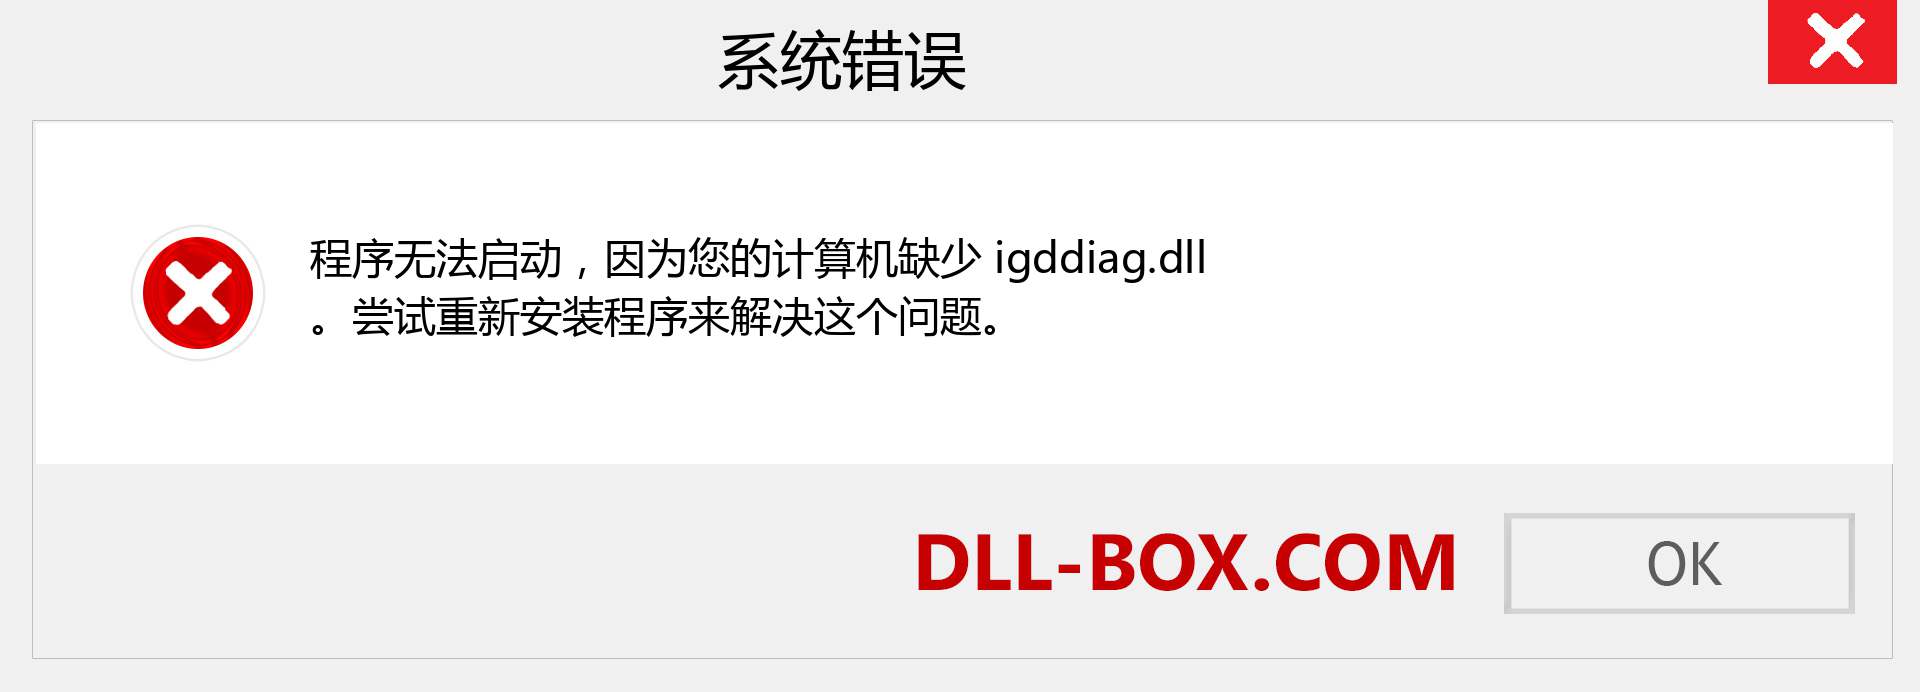 igddiag.dll 文件丢失？。 适用于 Windows 7、8、10 的下载 - 修复 Windows、照片、图像上的 igddiag dll 丢失错误